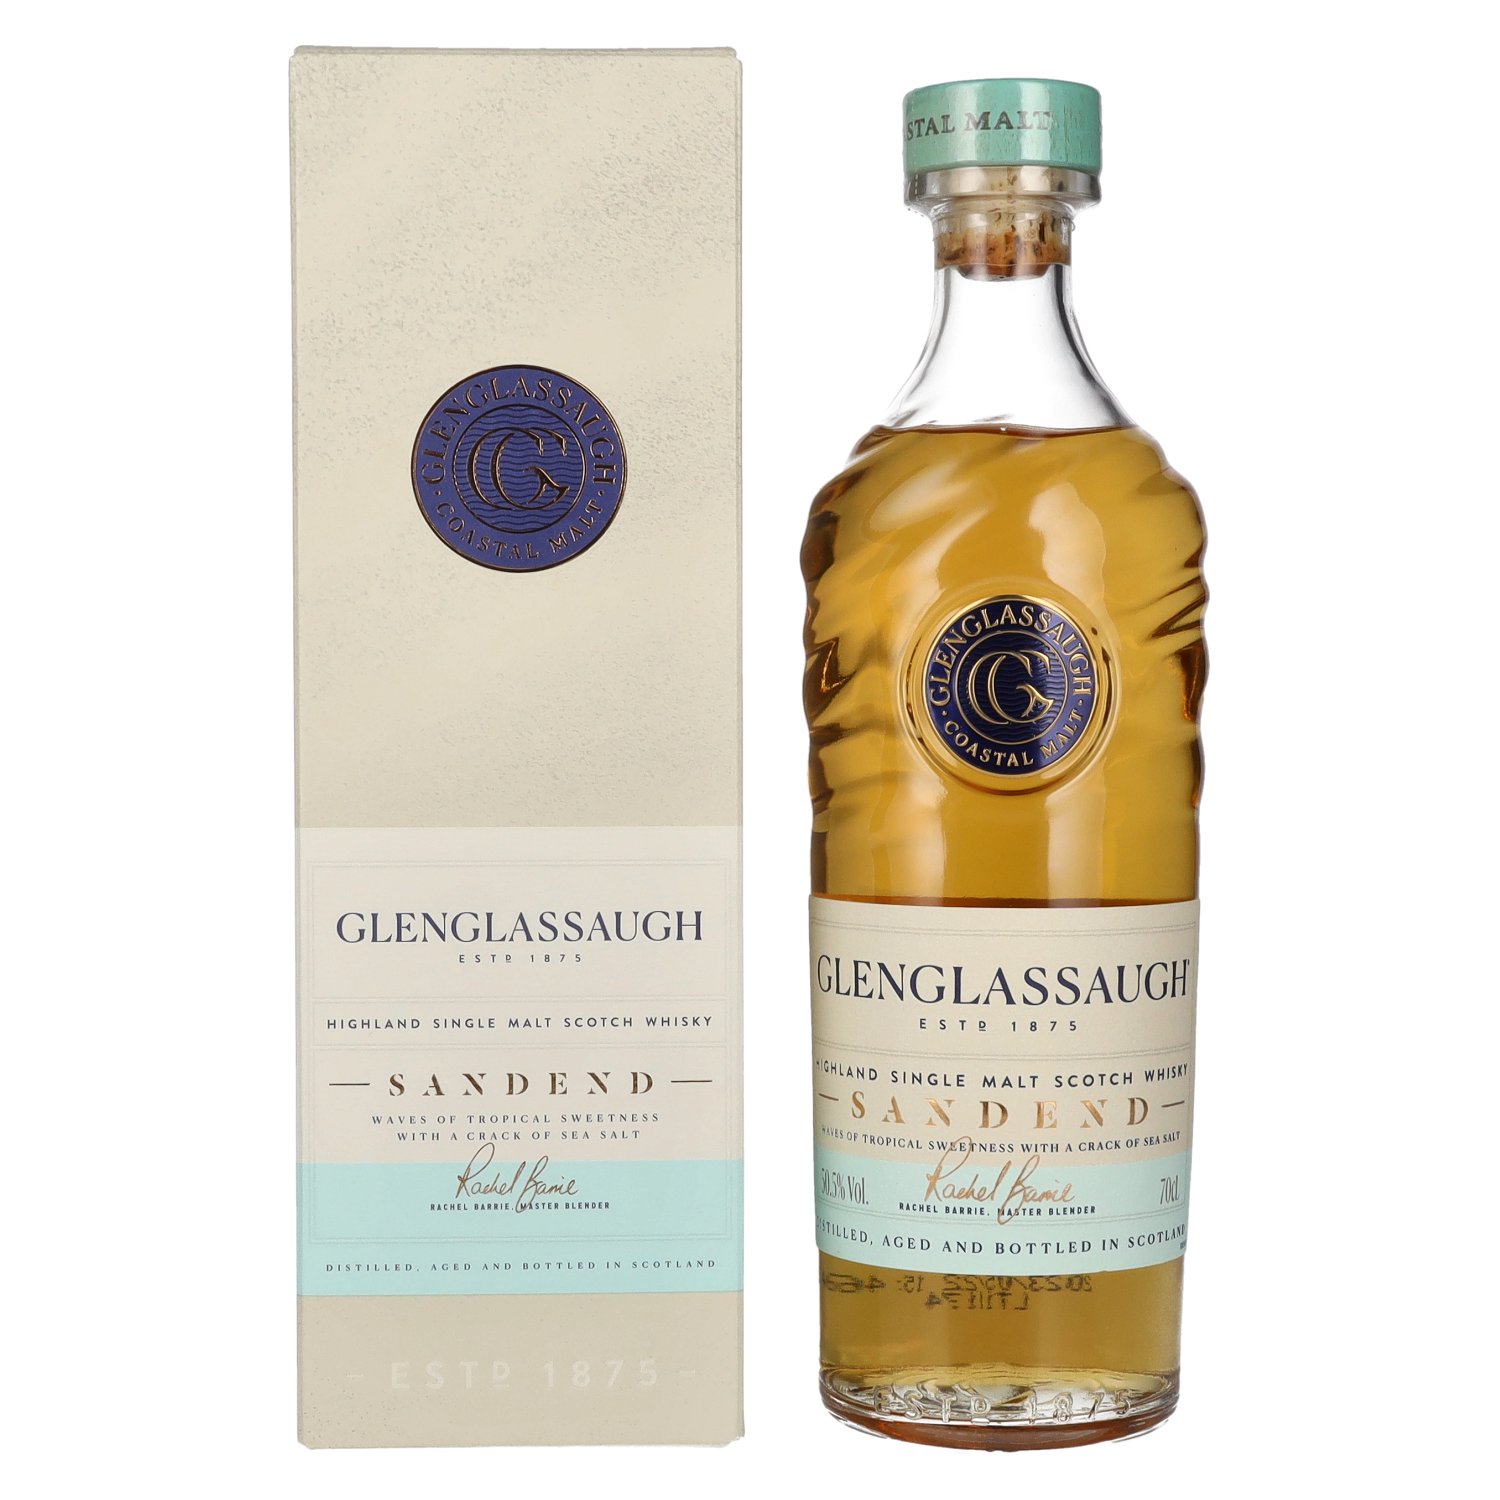 SANDEND Malt Single 50,5% Vol. Scotch Whisky Highland Glenglassaugh 0,7l Geschenkbox in